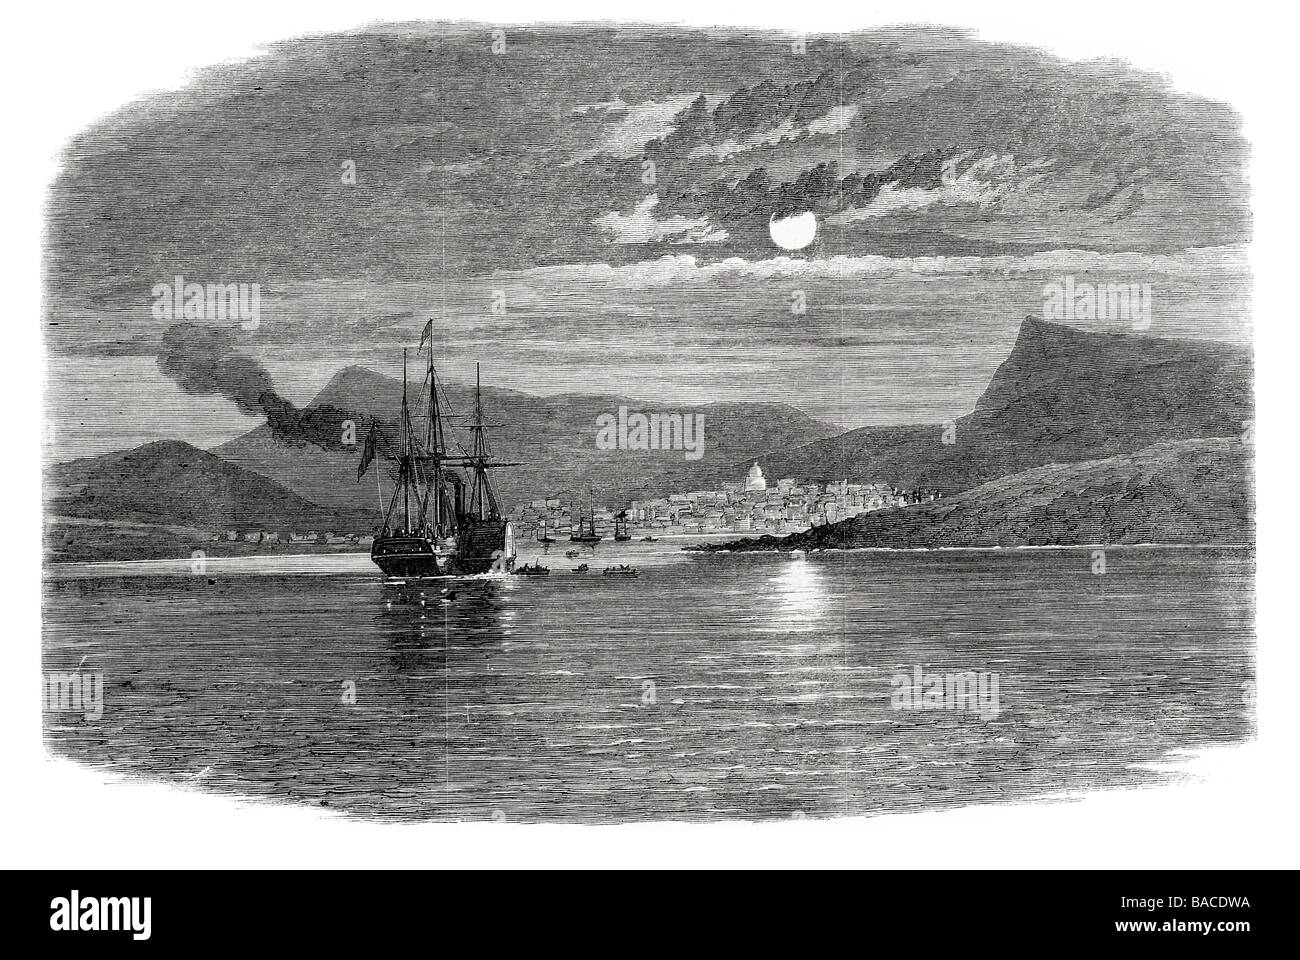 Jacmel Hayti 1865 Westindien Schiff Nacht Französisch Karibik Republik Haiti Hafen Hafen Küste Dock Segelschiff Segelboot wind Stockfoto